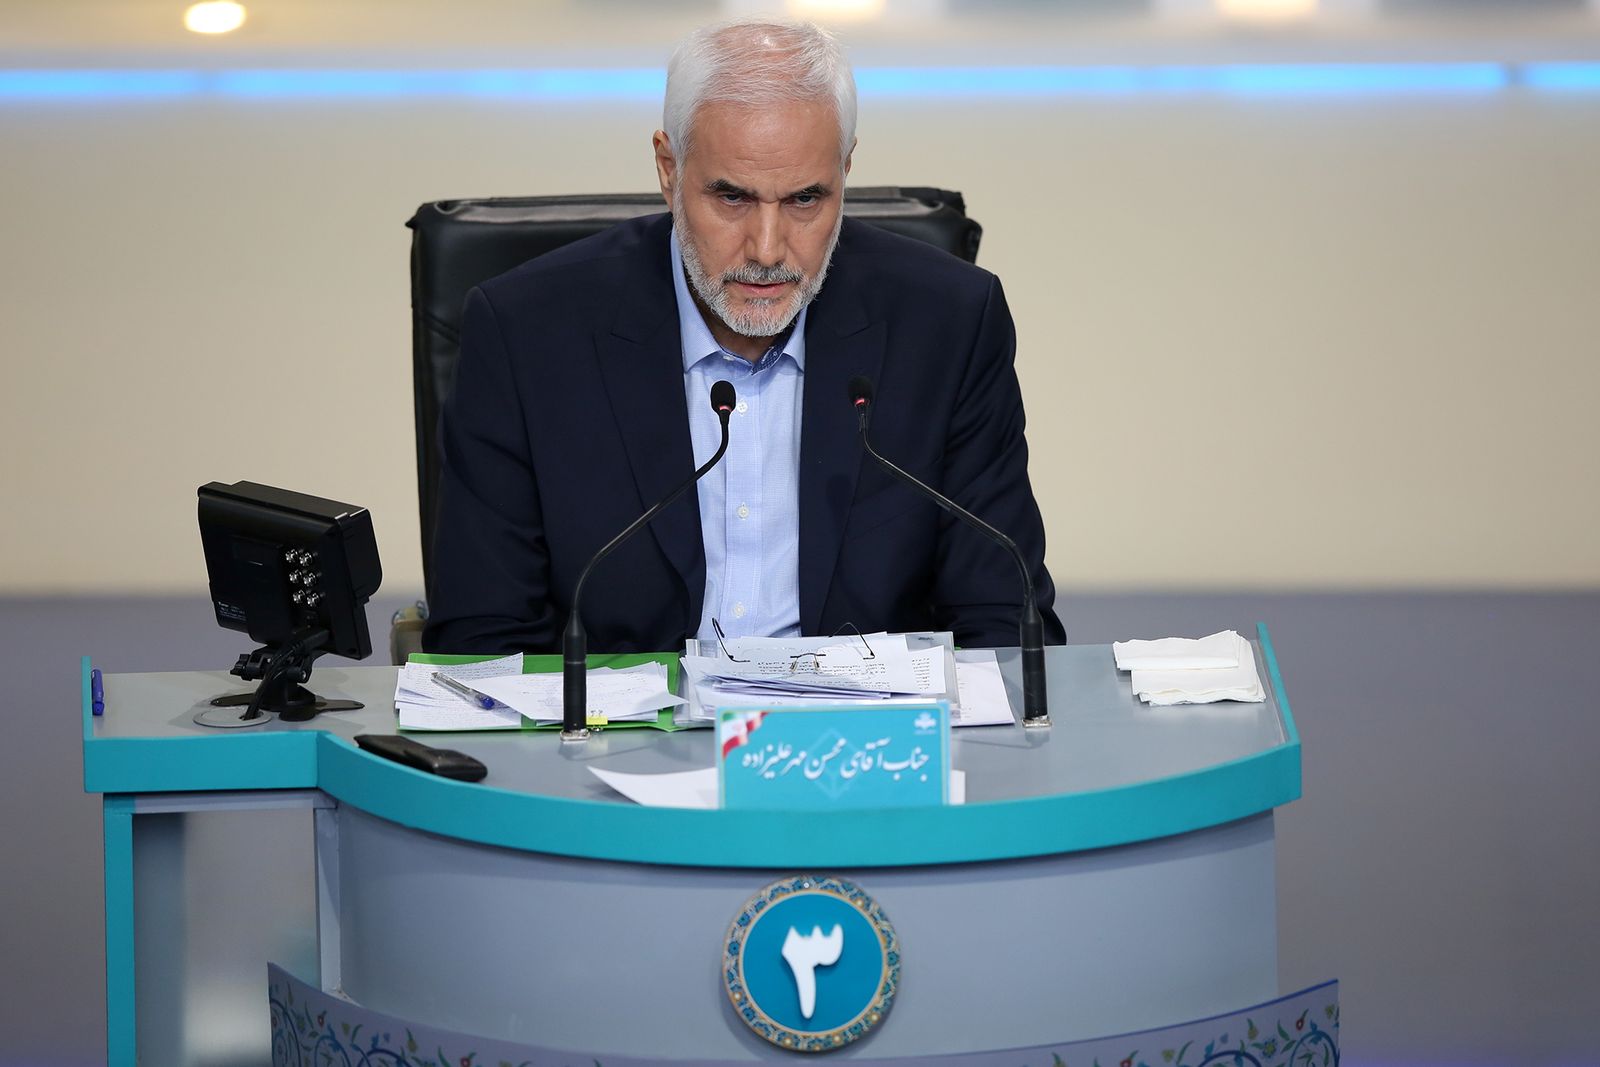 المرشح الرئاسي محسن مهر علي زاده خلال المناظرة في طهران - 8 يونيو 2021 - REUTERS